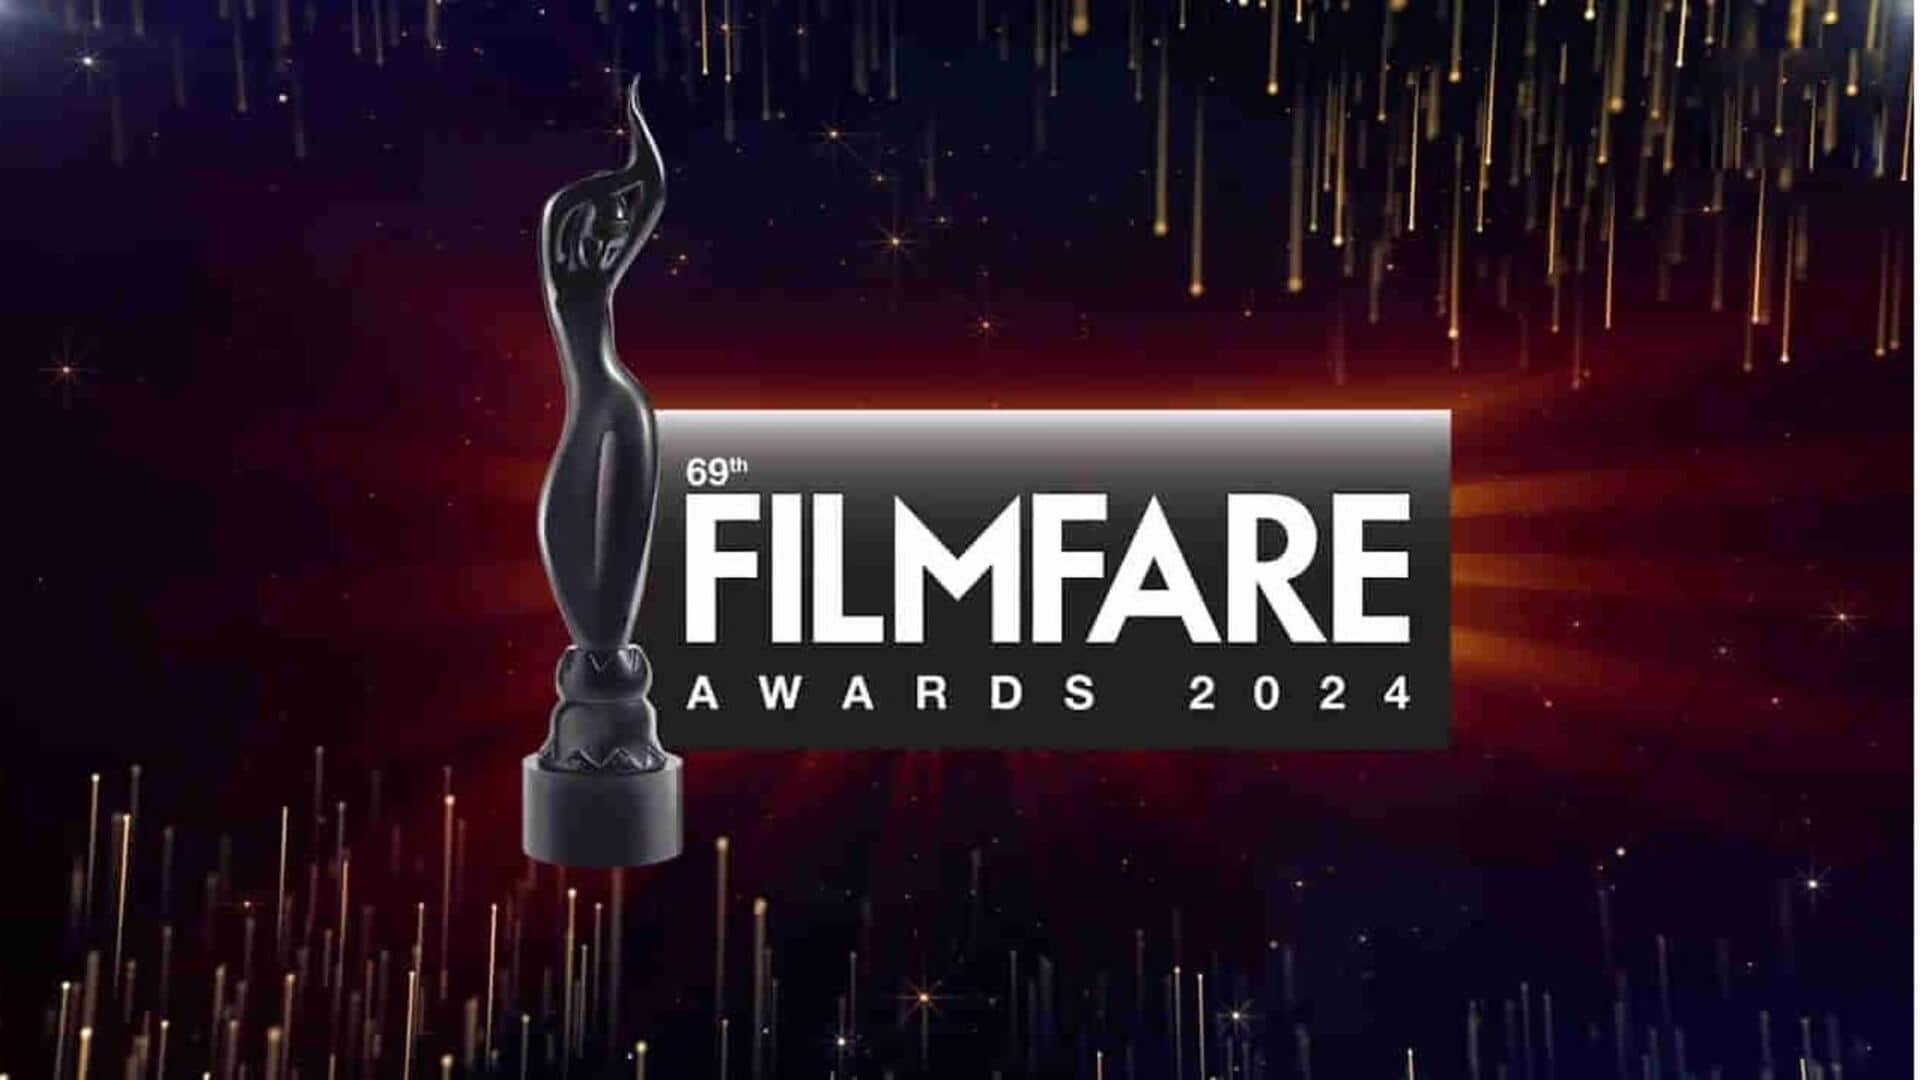 Filmfare Awards: 69వ ఫిల్మ్‌ఫేర్ అవార్డ్స్.. ఉత్తమ సినిమా 12thఫెయిల్, ఎక్కువ అవార్డులు గెలుచుకున్న యానిమల్ 